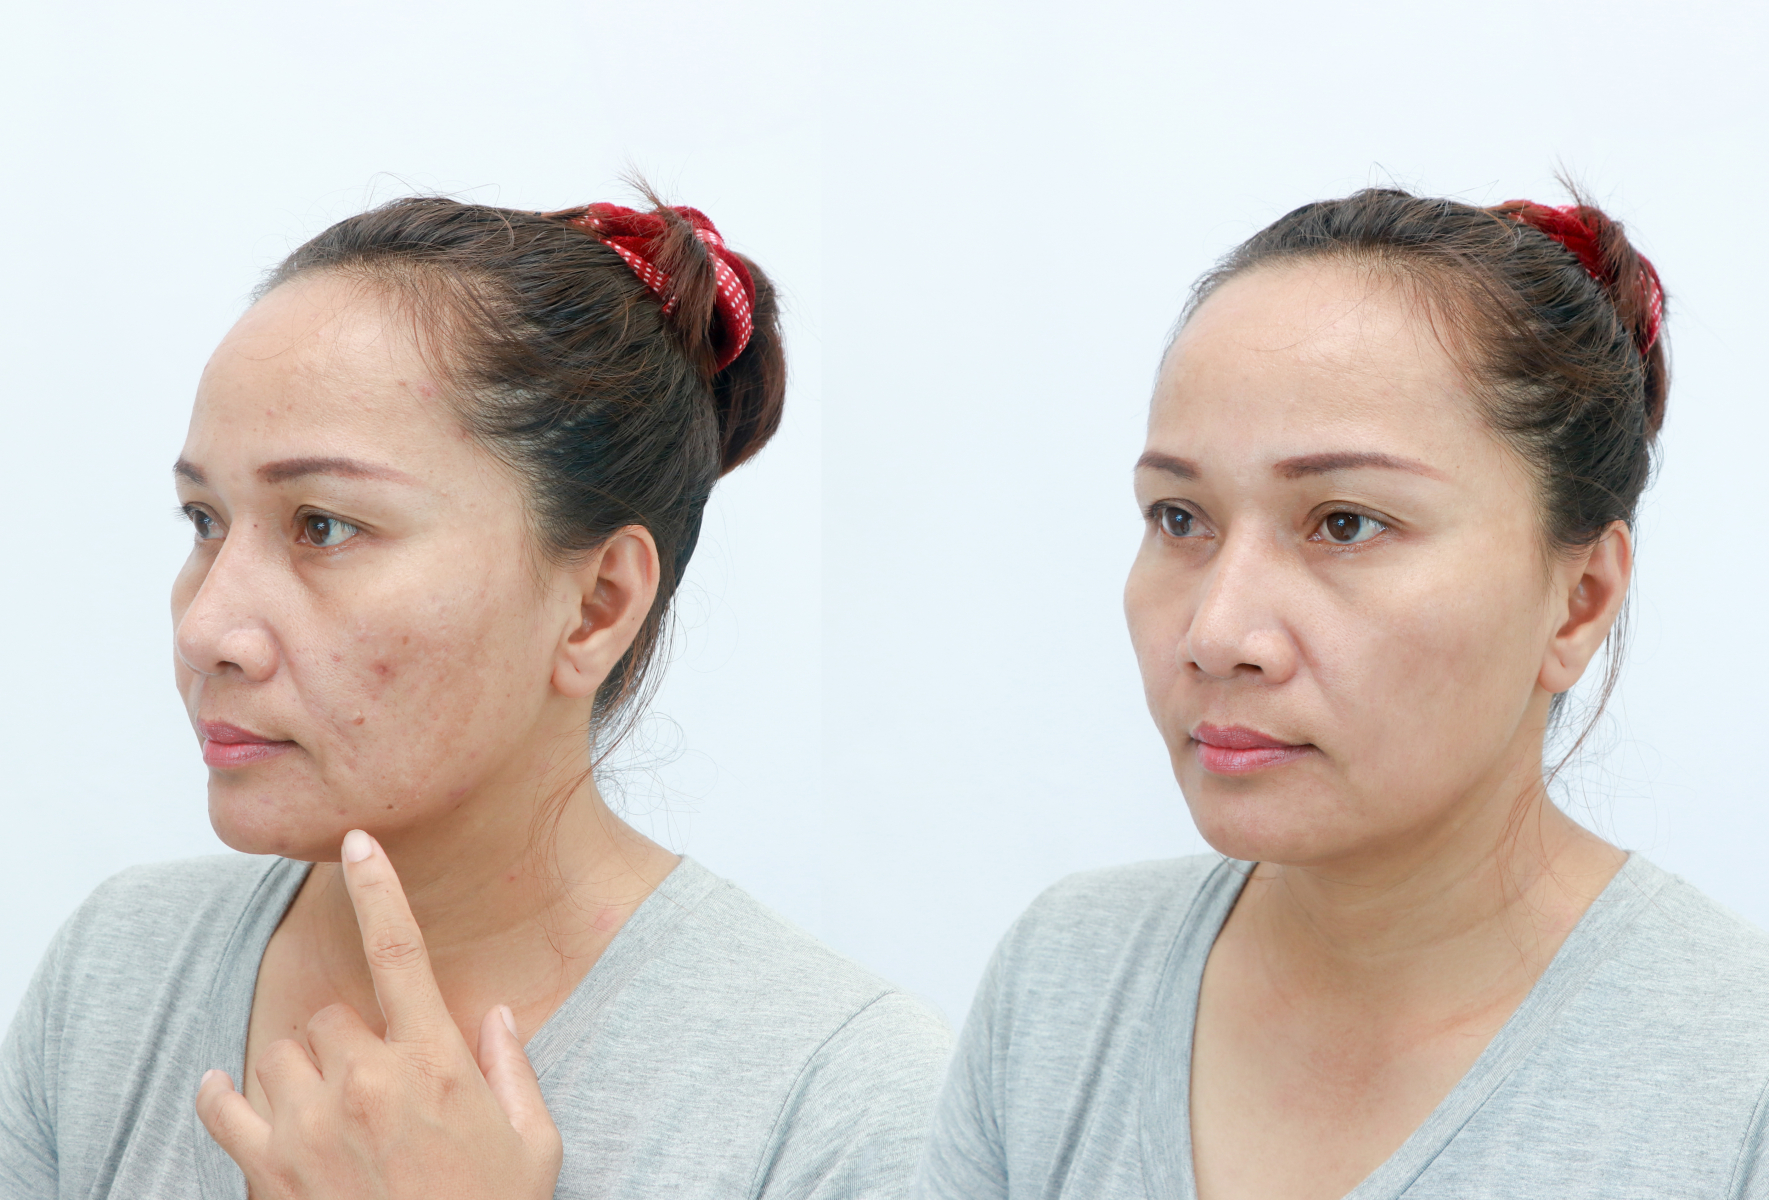 Căng da mặt không phẫu thuật là một phương pháp hiệu quả giúp nhan sắc của bạn trở nên trẻ trung hơn bằng cách căng da mặt và nâng cơ.